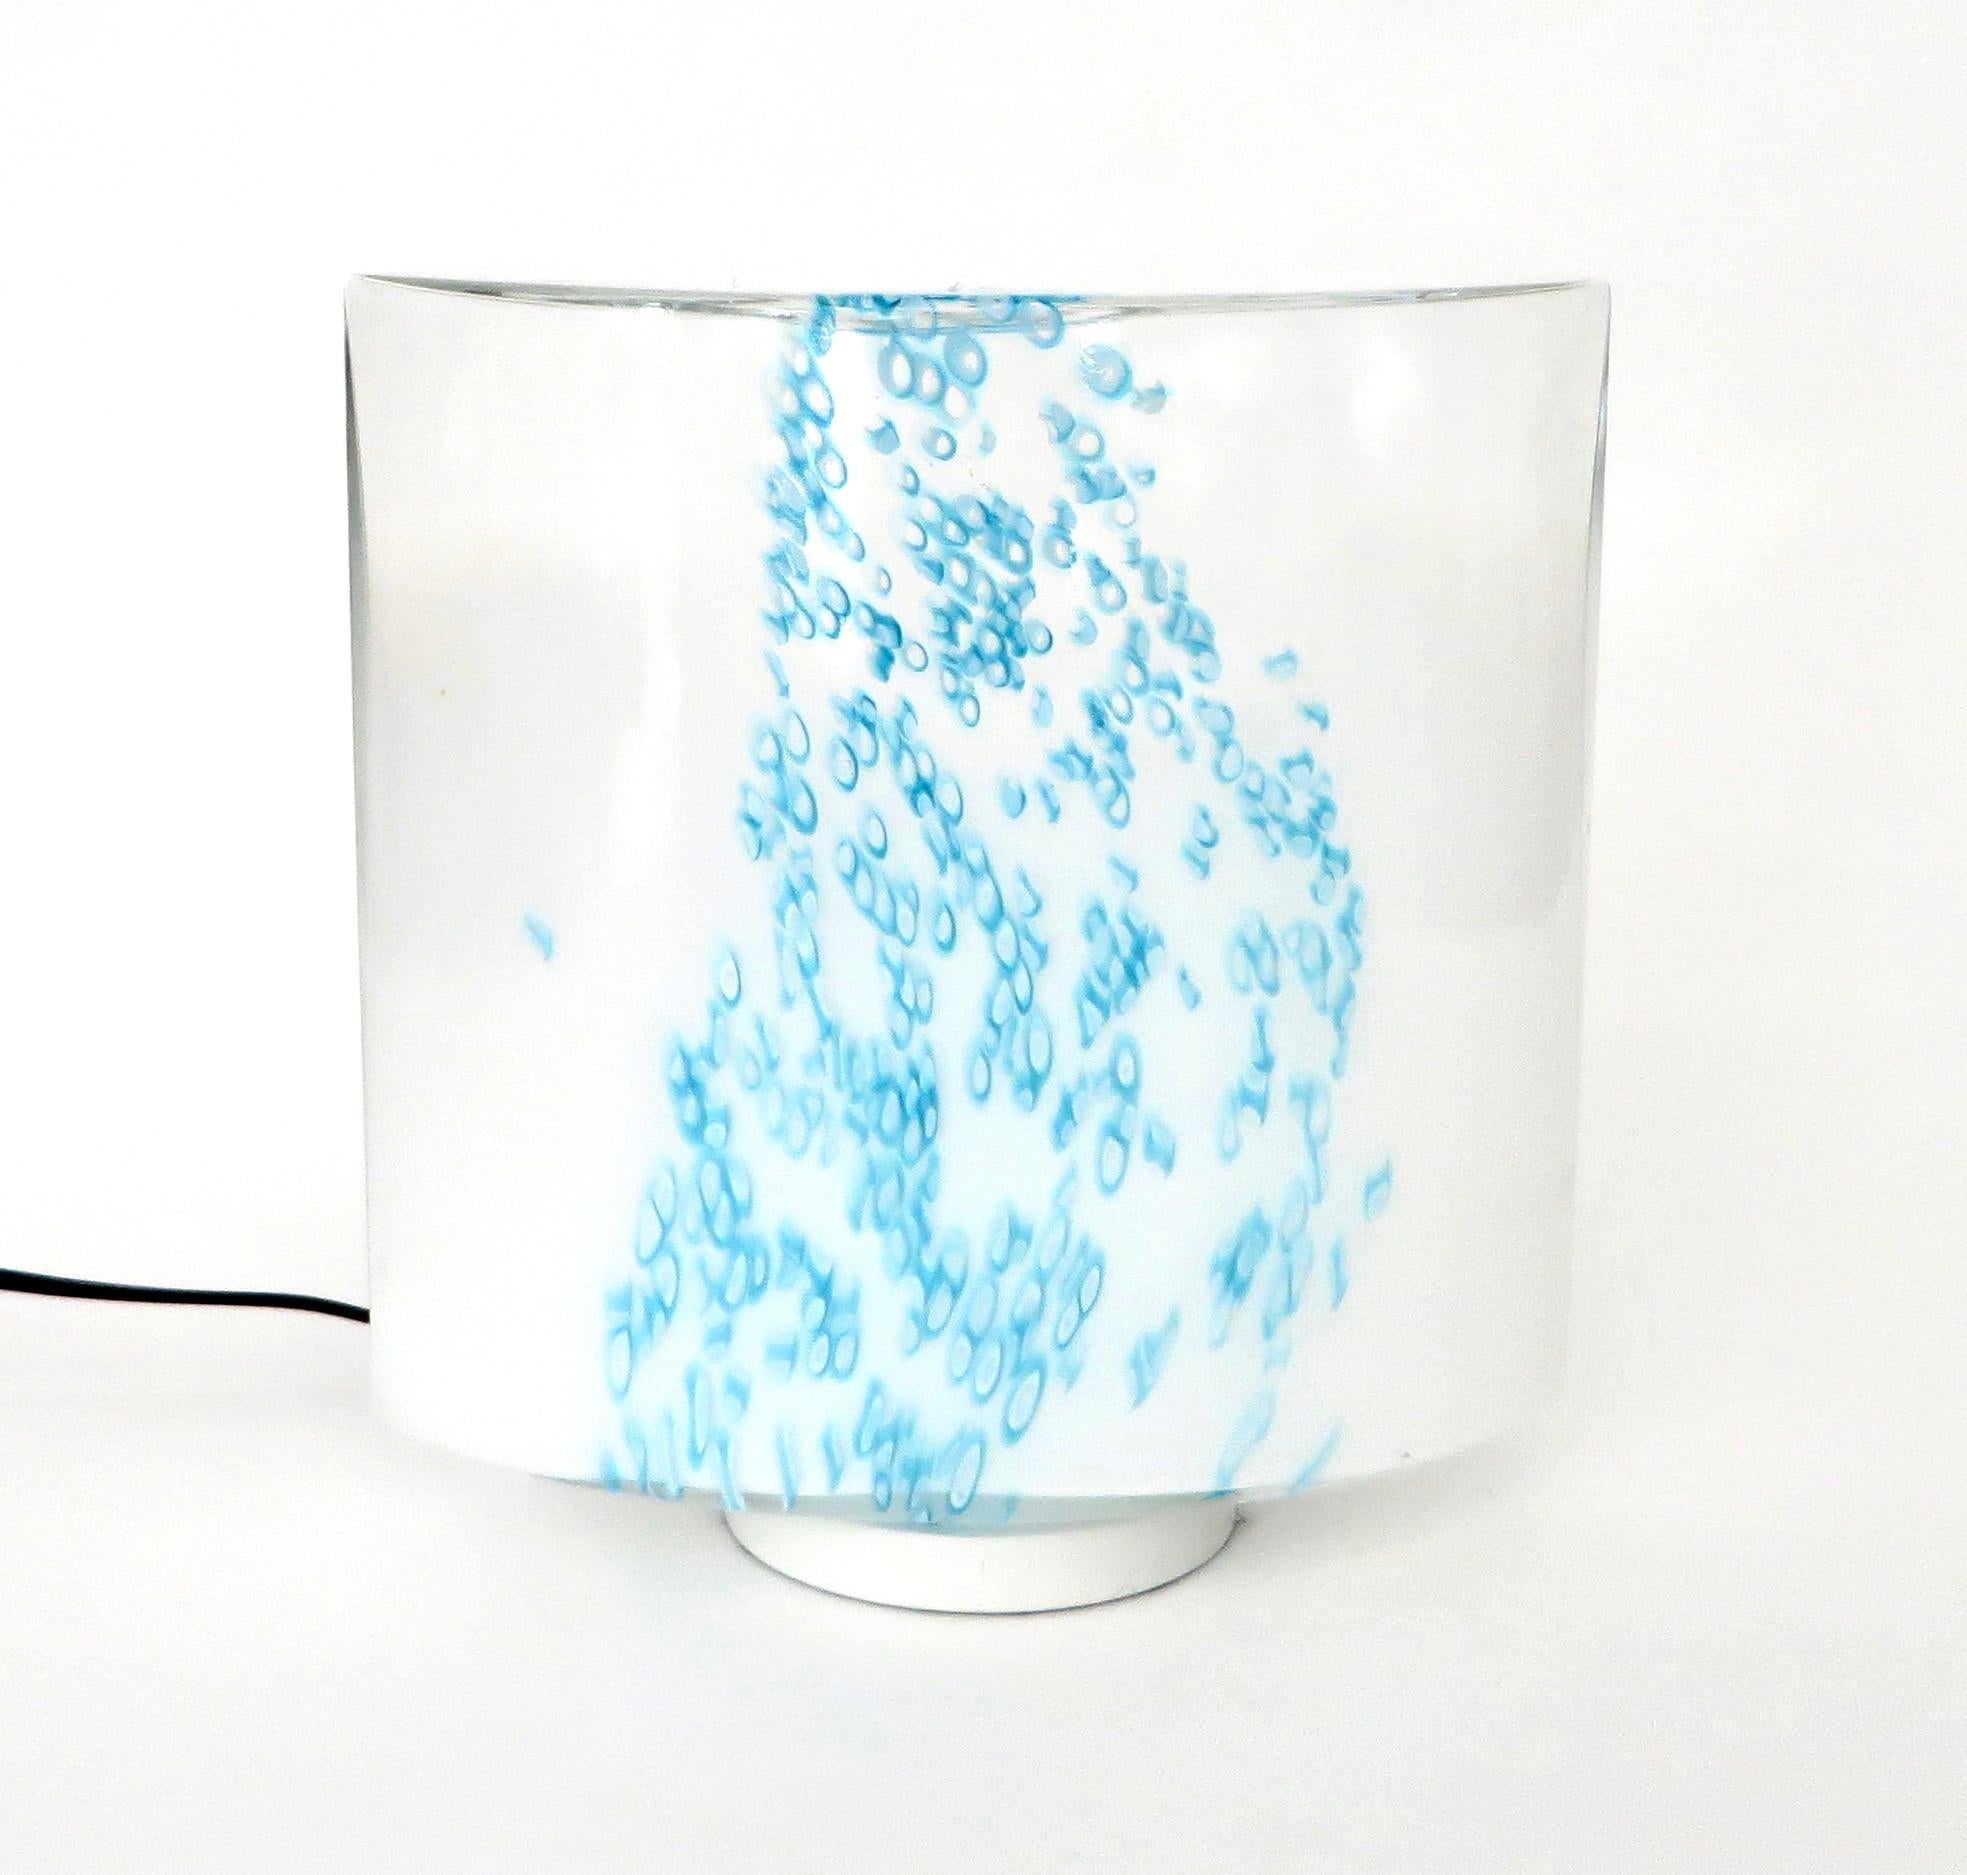 Lampe de table en verre opaque de Murano Leucos avec des coulures de couleur bleu turquoise évoquant la mer ou la pluie.
Il émet une douce lueur bleue lorsqu'il est allumé. 
Une ampoule dans la base.